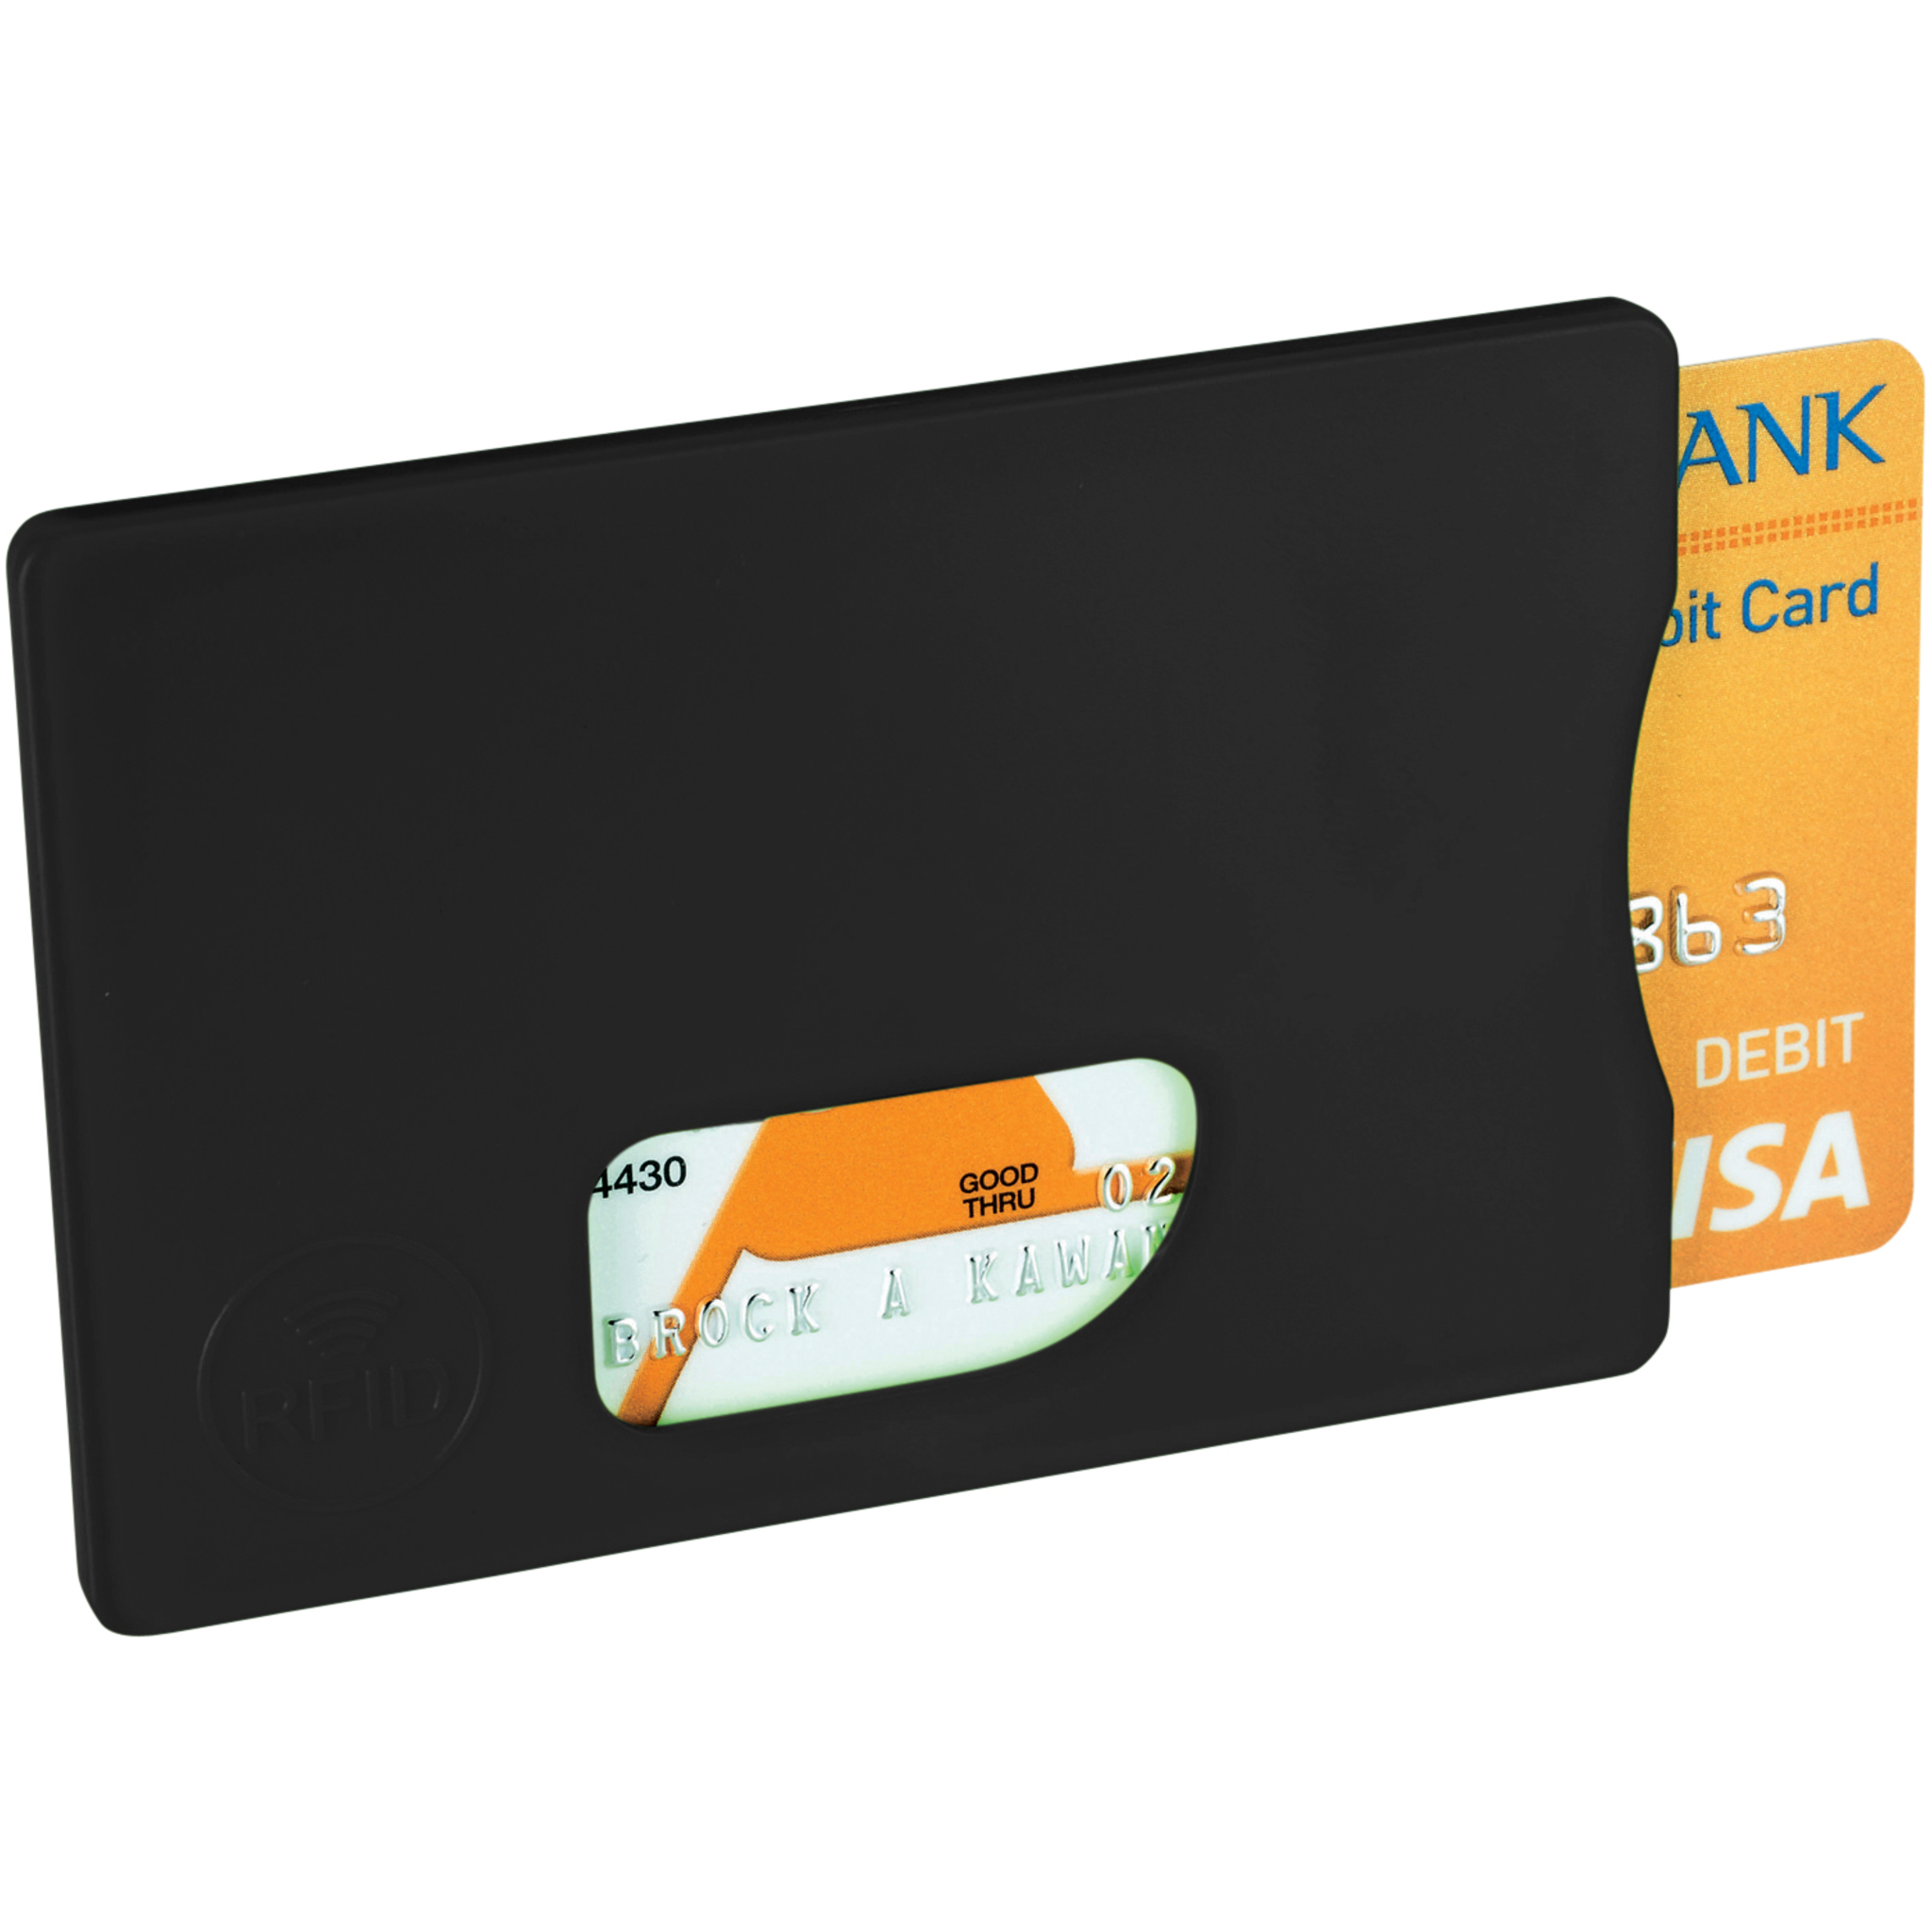 RFID Kreditkortshållare